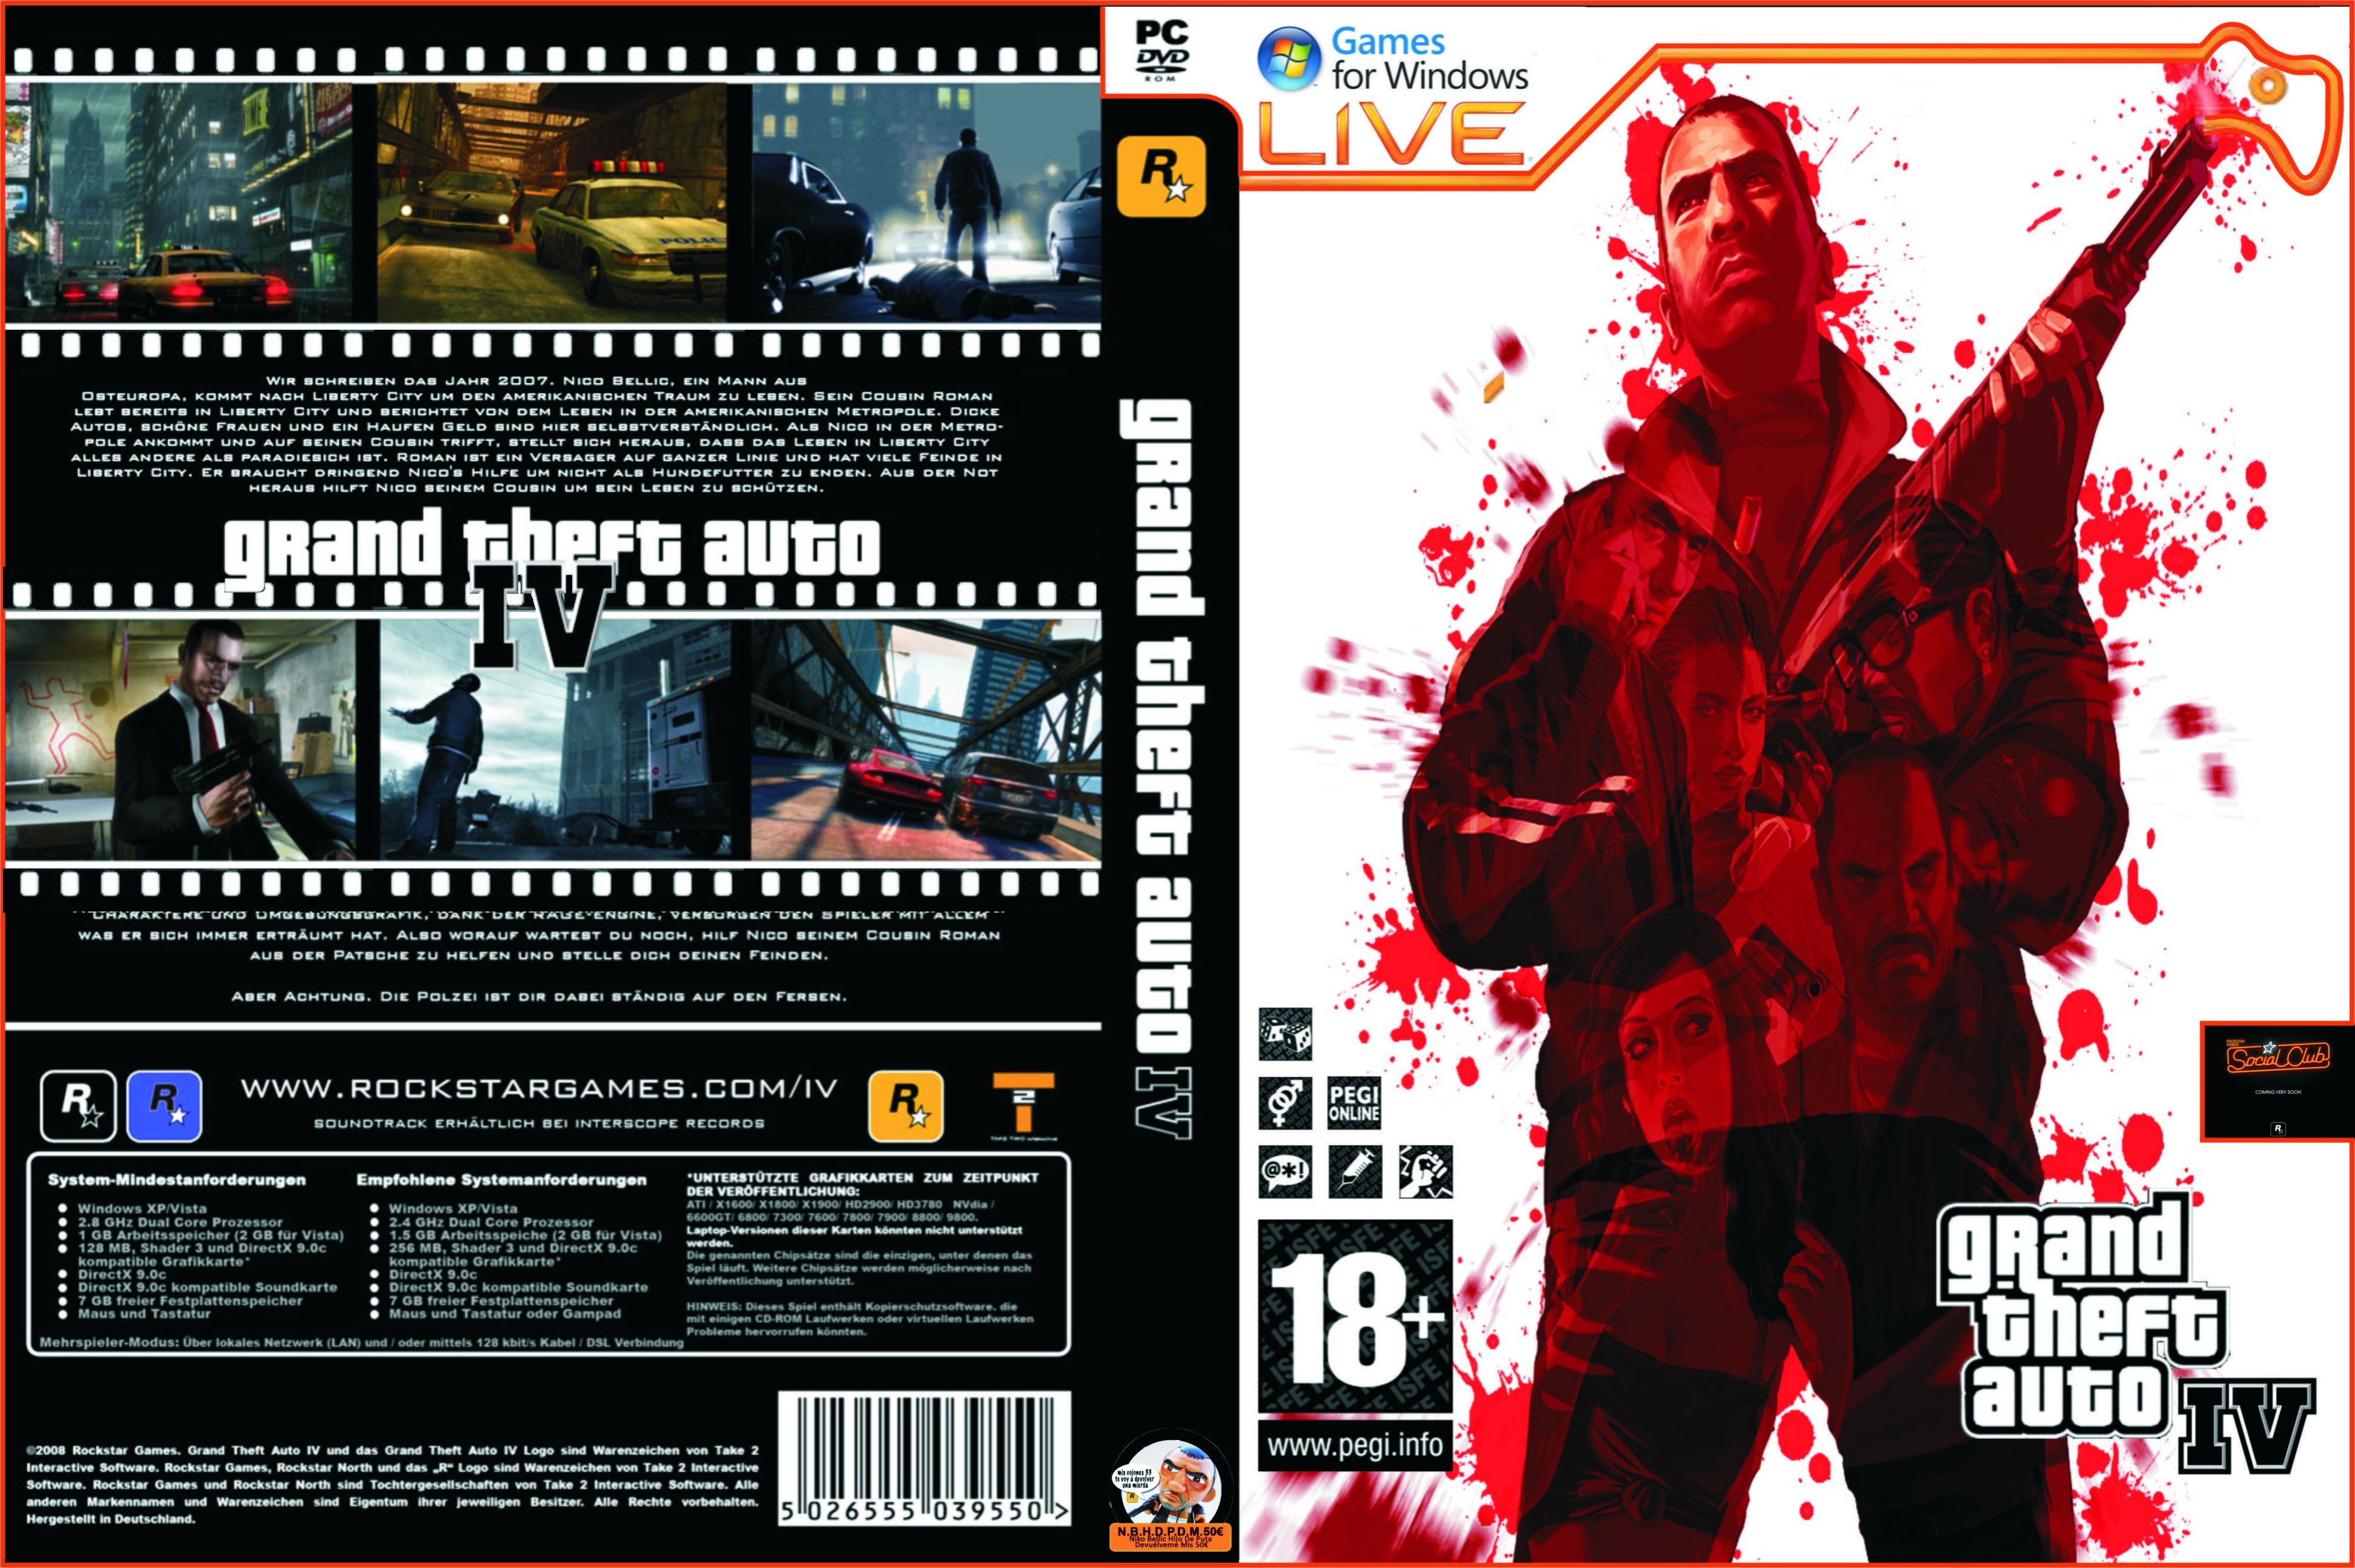 Grand Theft Auto IV box cover. 